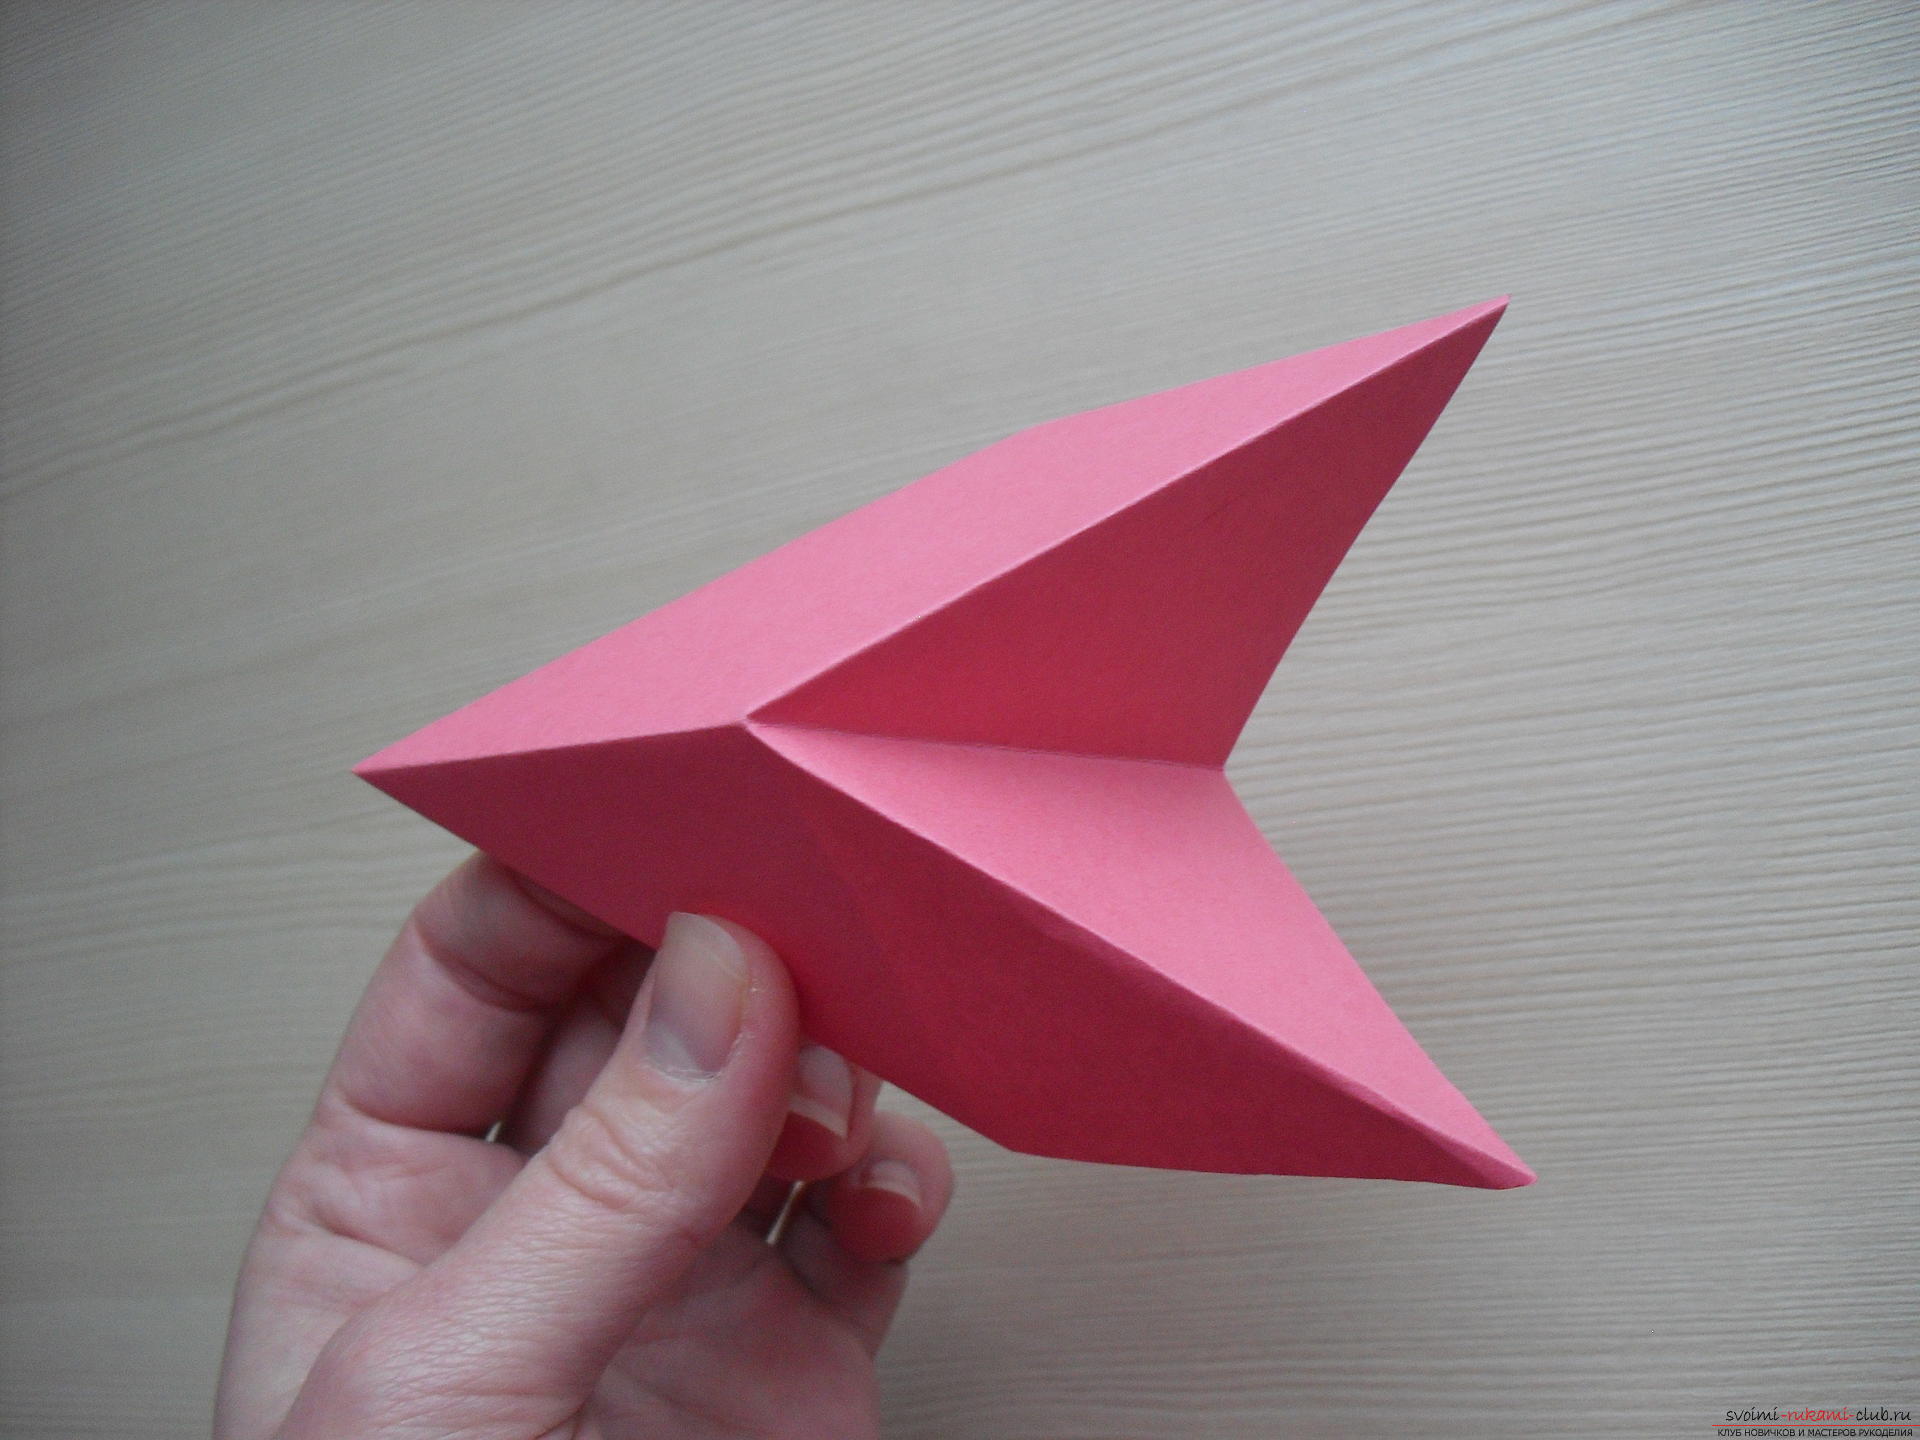 Этот мастер-класс расскажет как создать простое модульное оригами - трансформер.. Фото №8